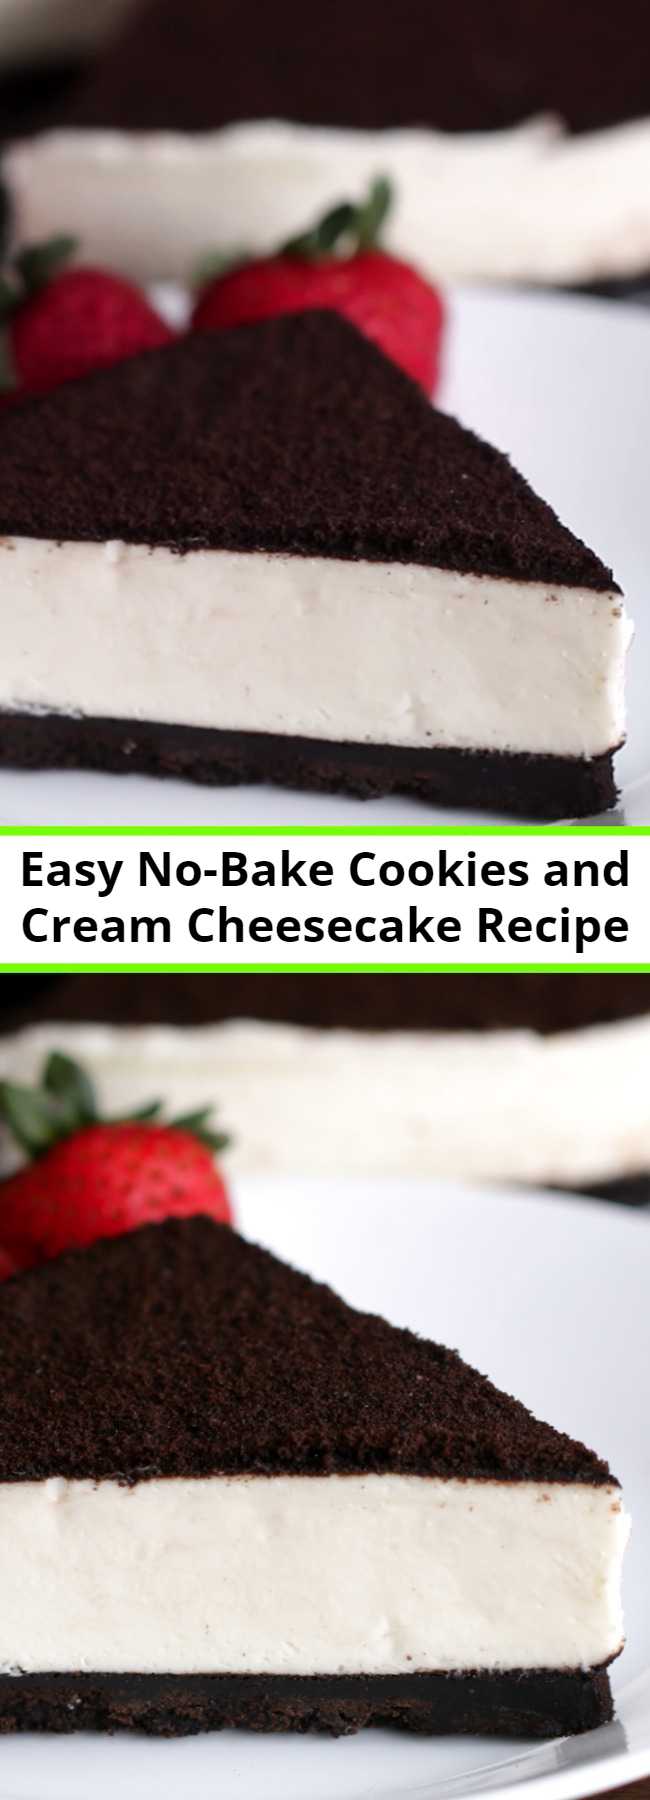 Easy No-Bake Cookies and Cream Cheesecake Recipe